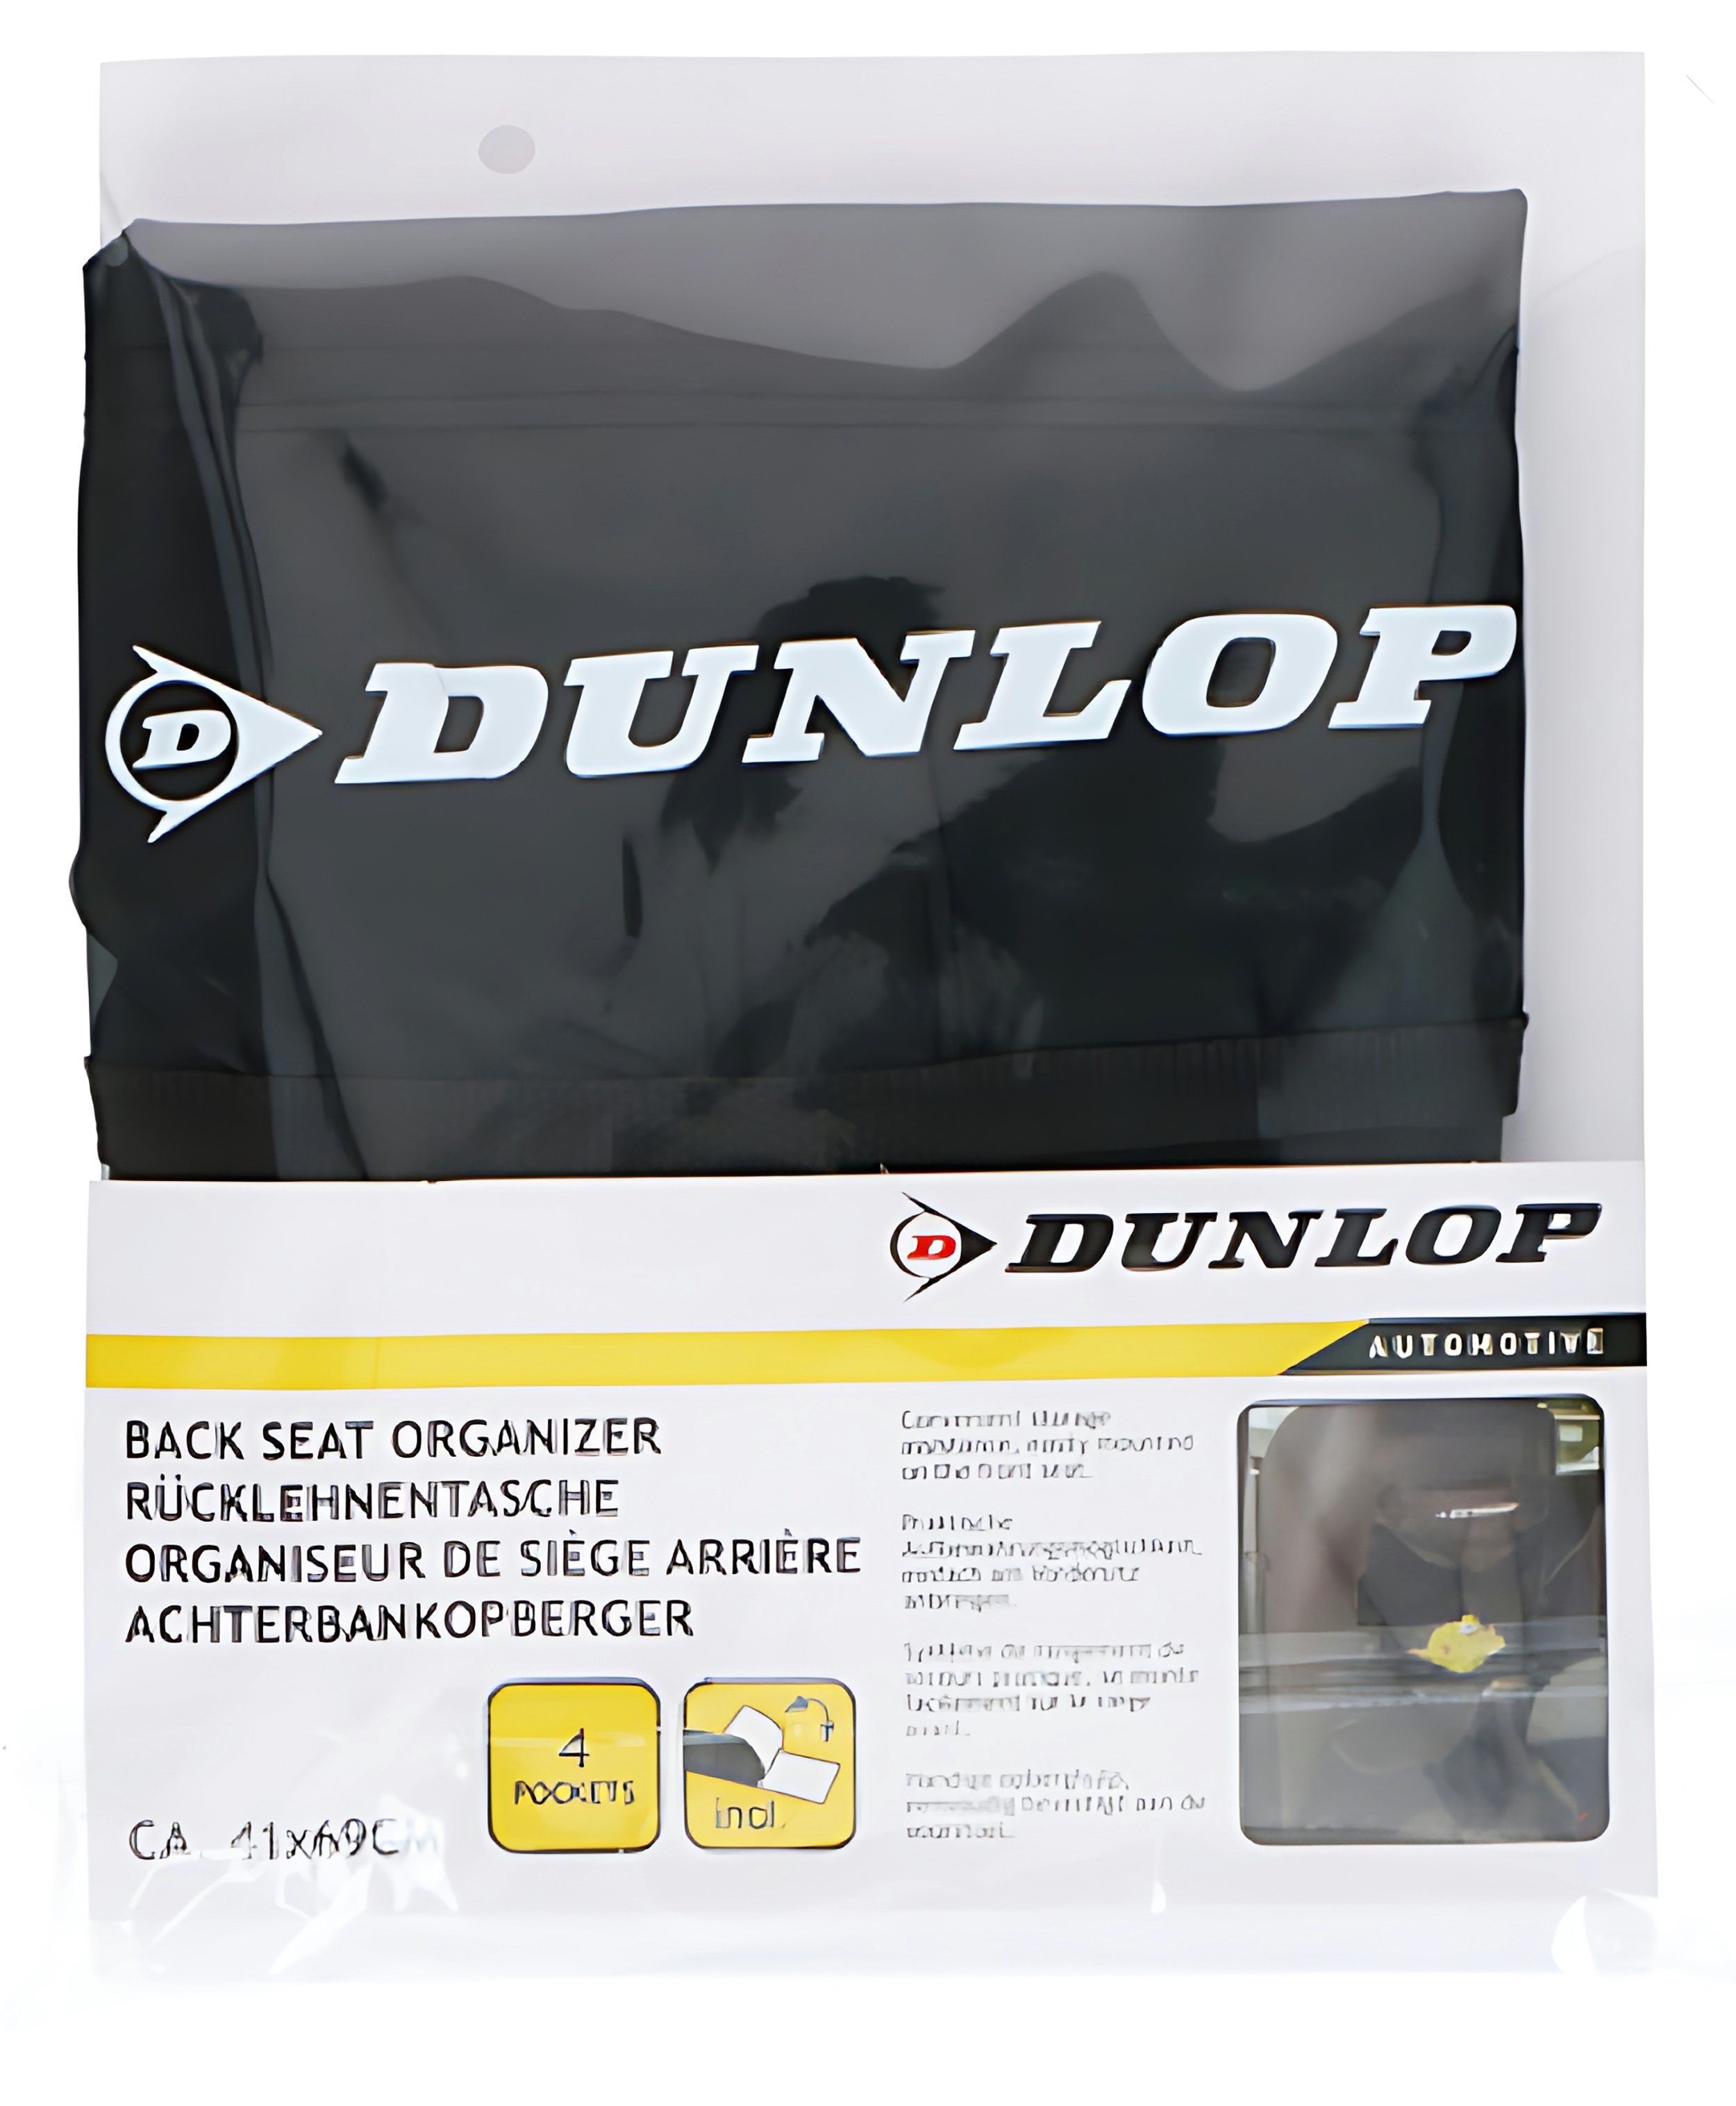 Dunlop Rücksitzorganizer RÜCKLEHNENTASCHE Rückenlehnenschutz Veranstalter Rücksitz Schwarz Auto 41x69cm für 13, Organizer Schutz Rücksitztasche Rücklehne Autositz